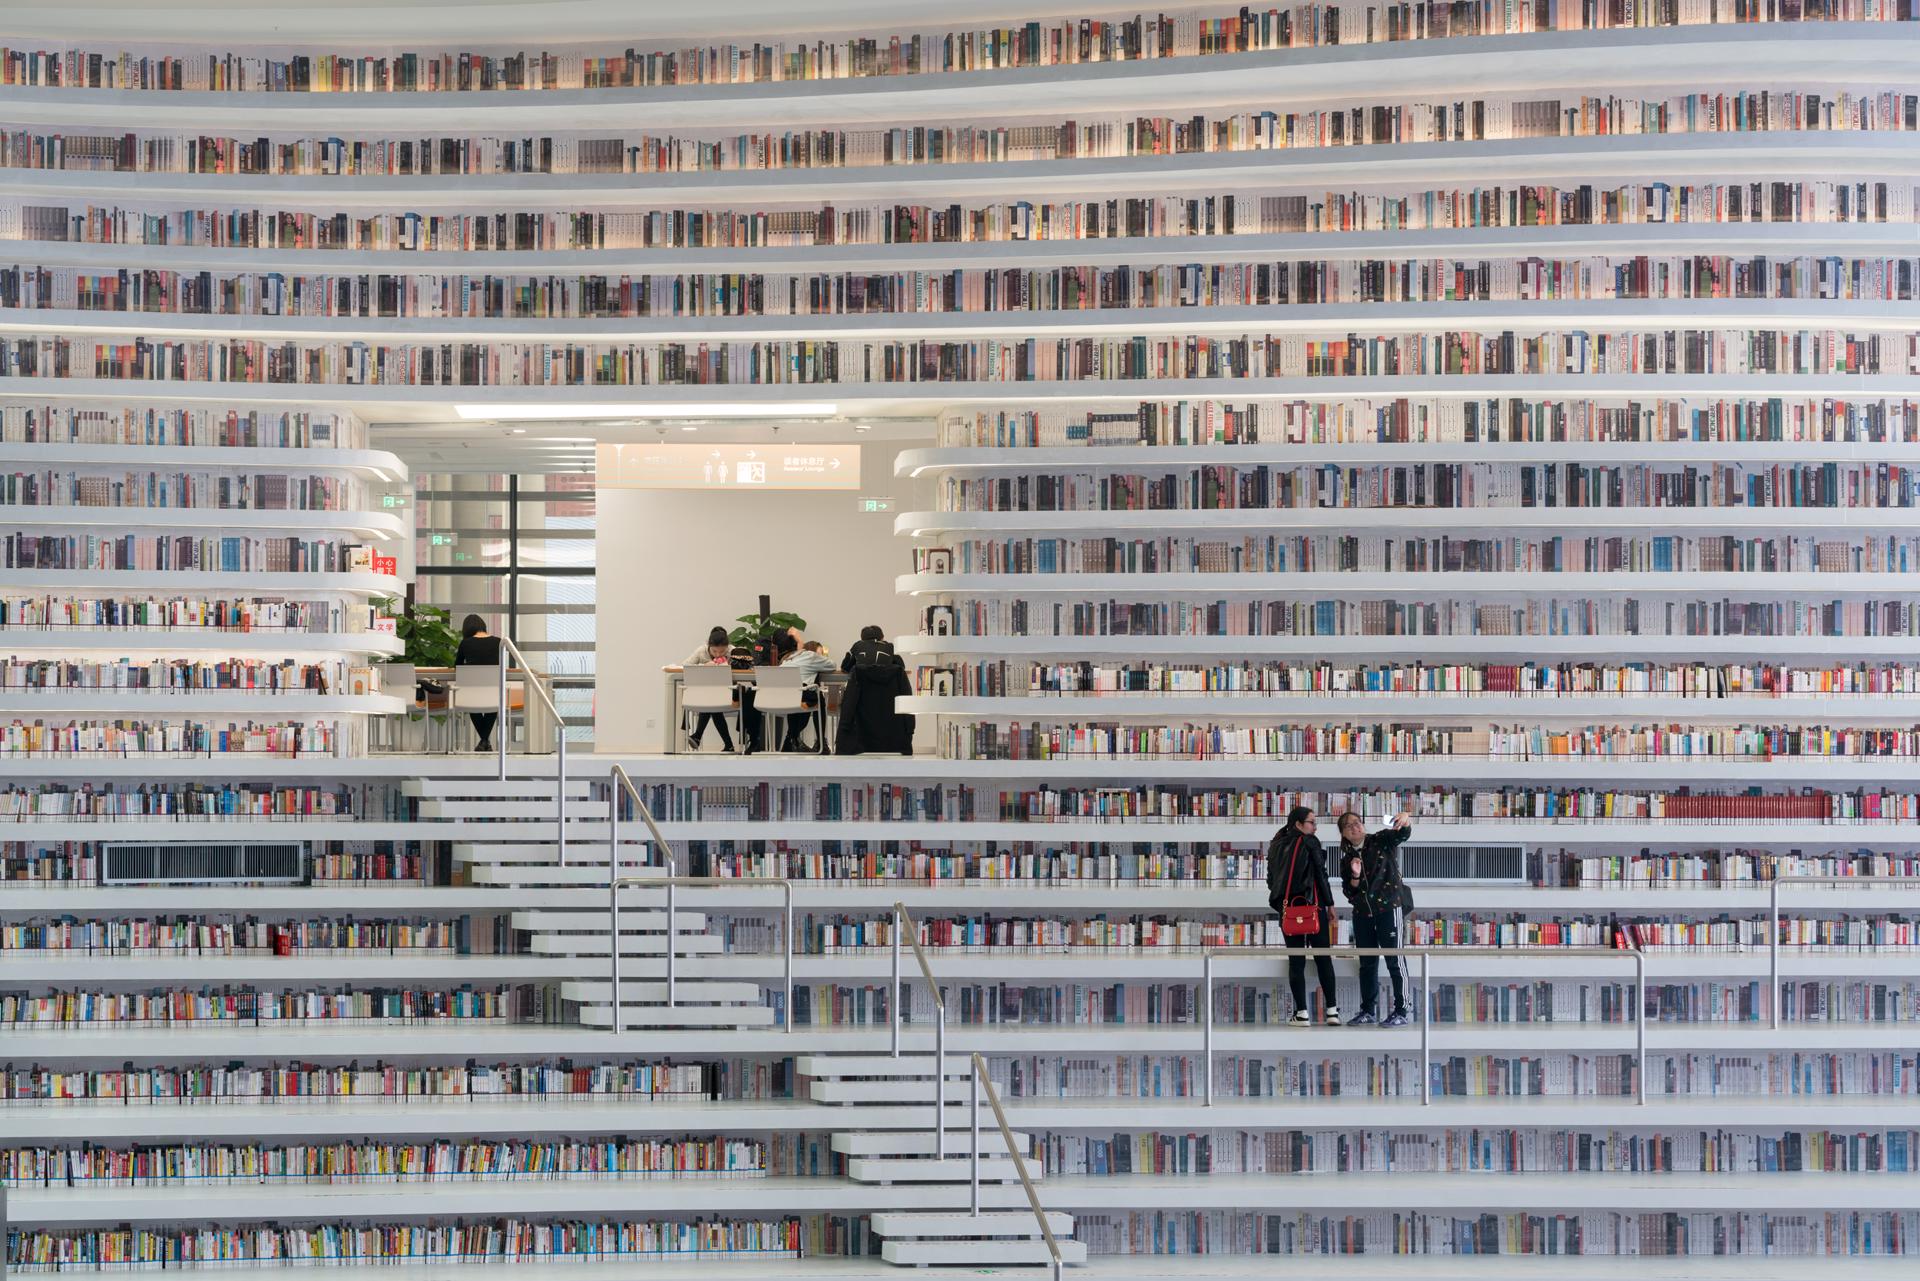 Több mint egymillió könyv otthona ez a futurisztikus épület 9